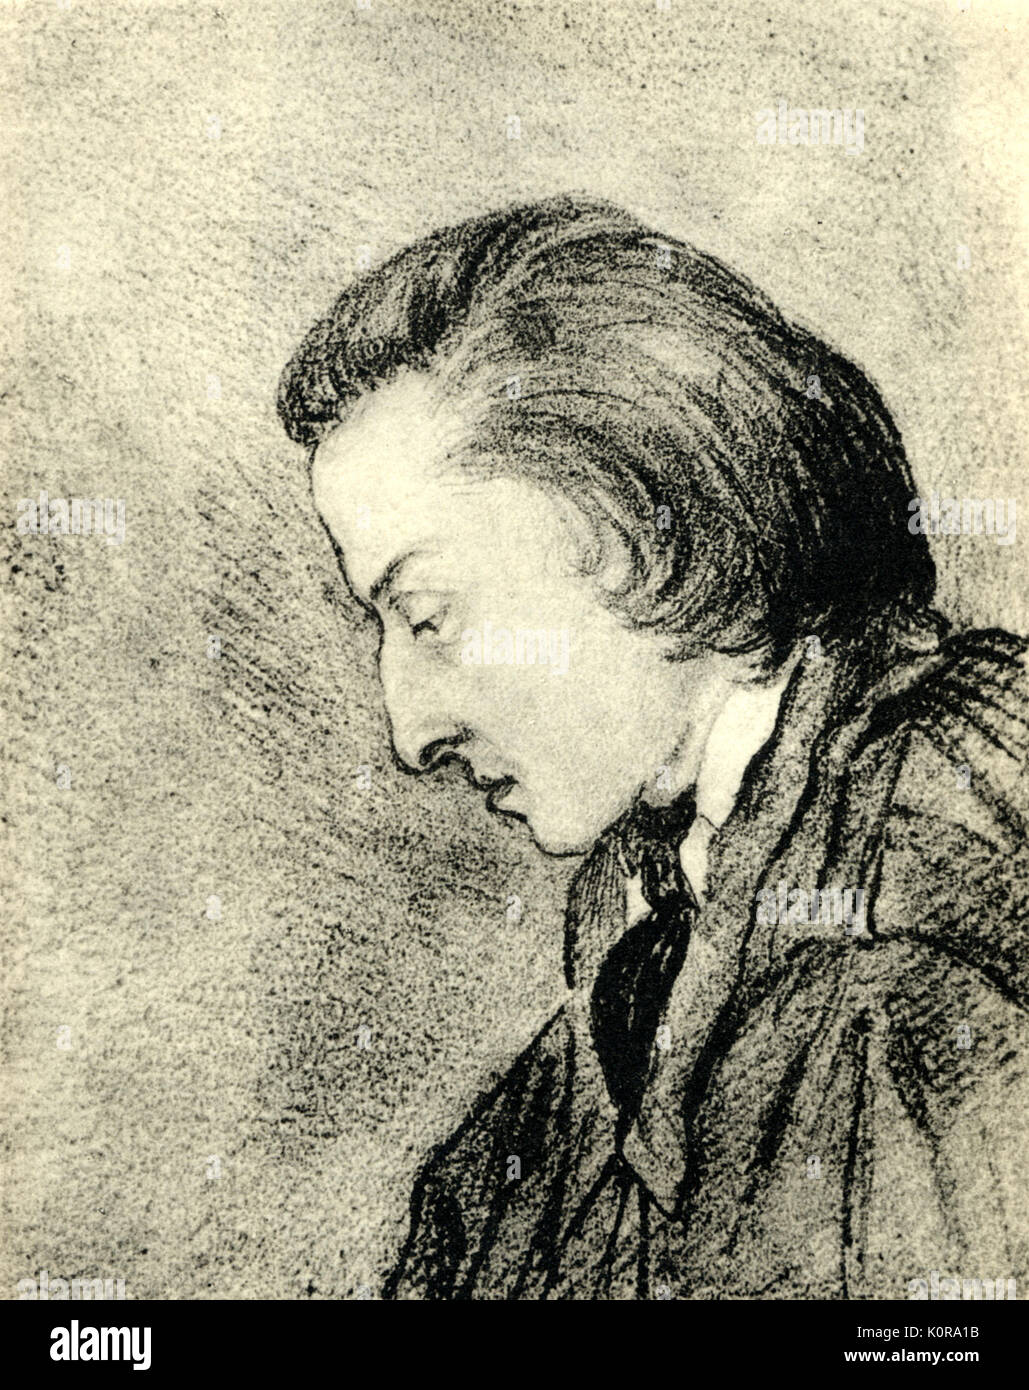 Profil de Frédéric Chopin, portrait par George Sand. Dessin. Le compositeur polonais (1810-1849). Banque D'Images